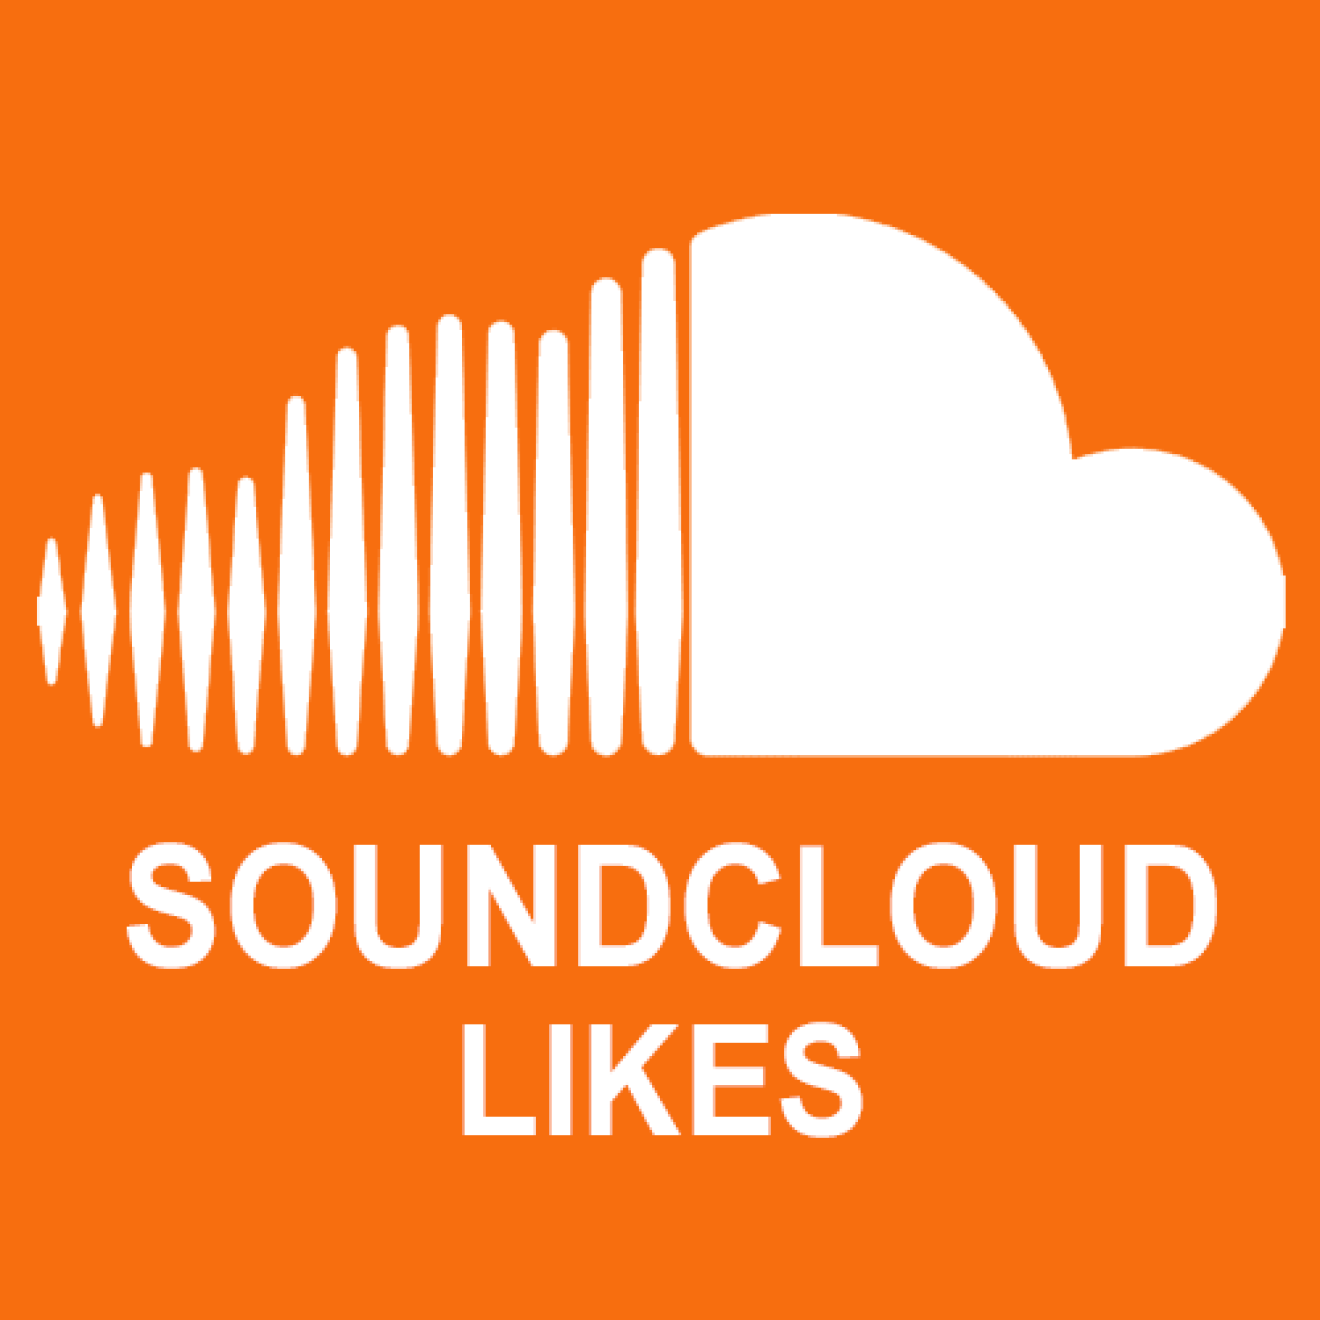 25000 Soundcloud Likes / Gefällt mir Angaben für Dich